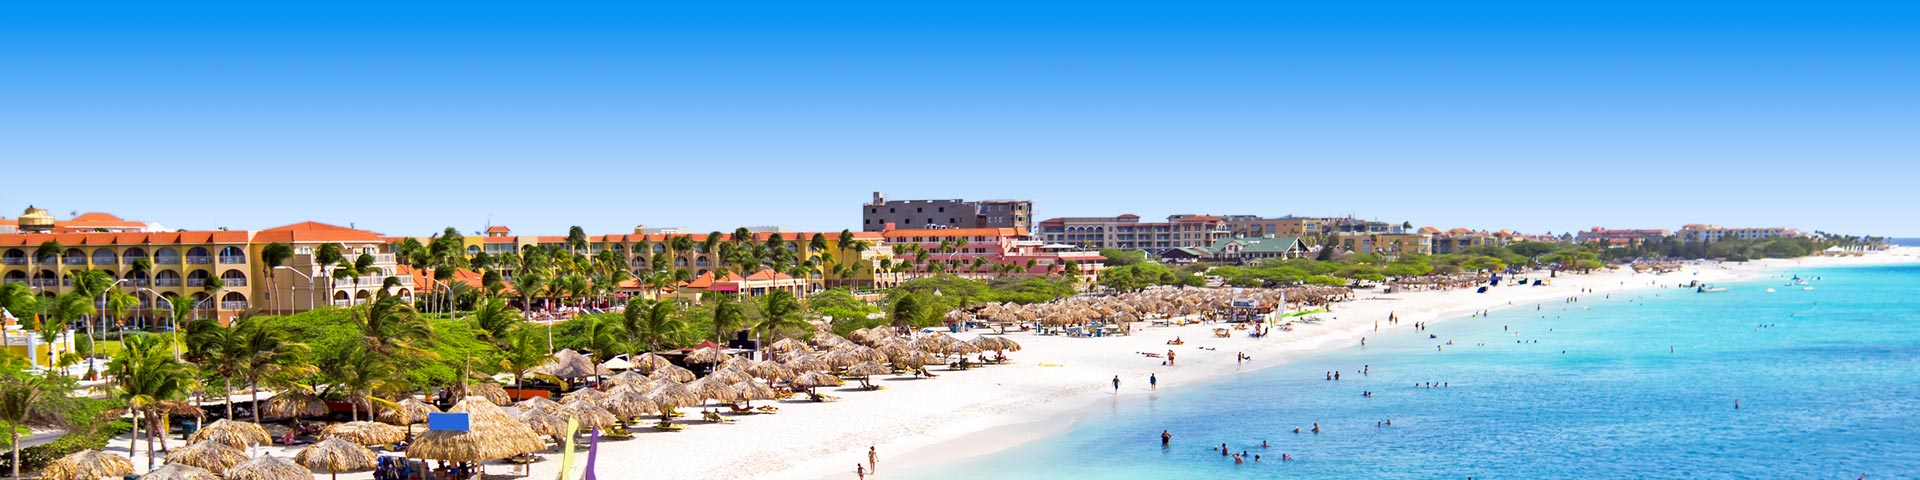 Hotels aan het strand en de blauwe zee op Aruba